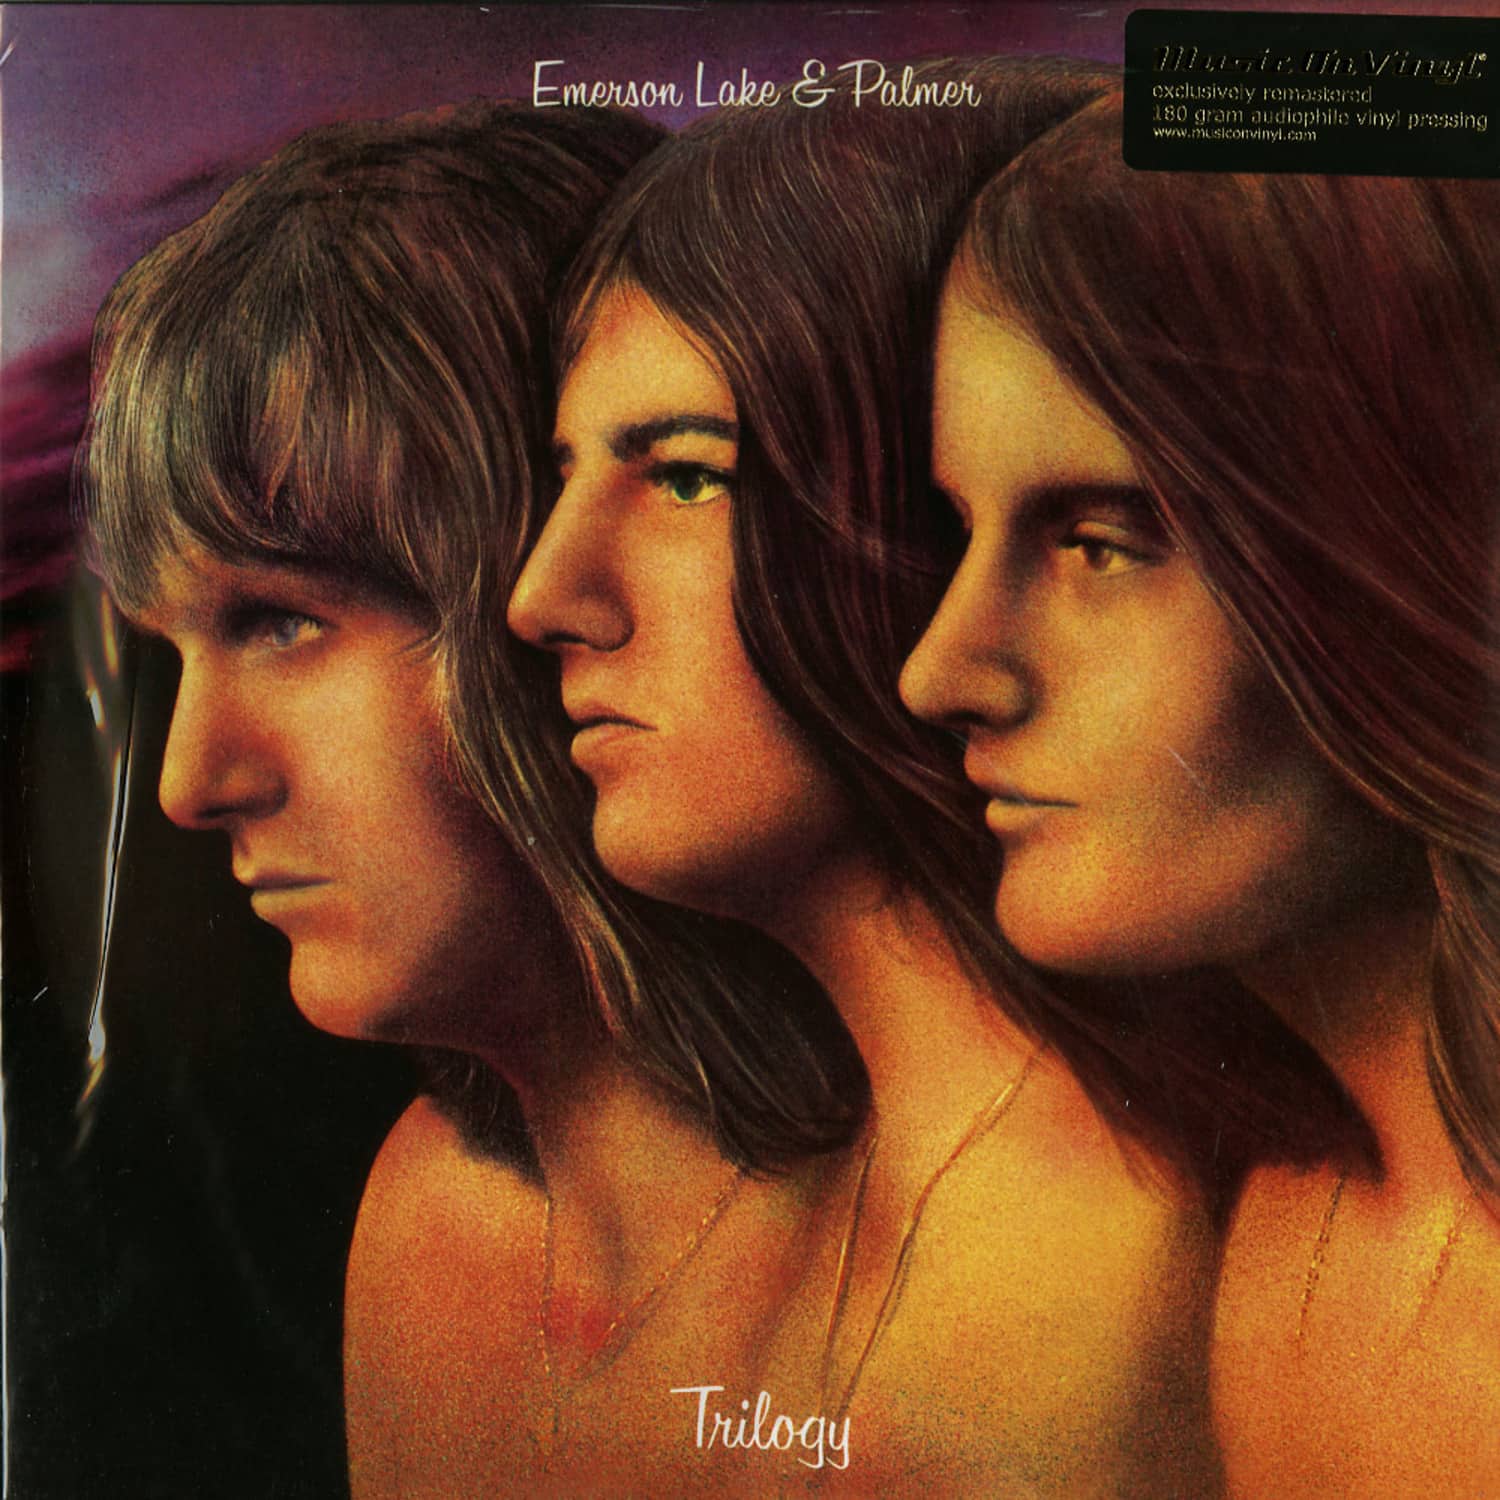 Emerson Lake - TRILOGY 